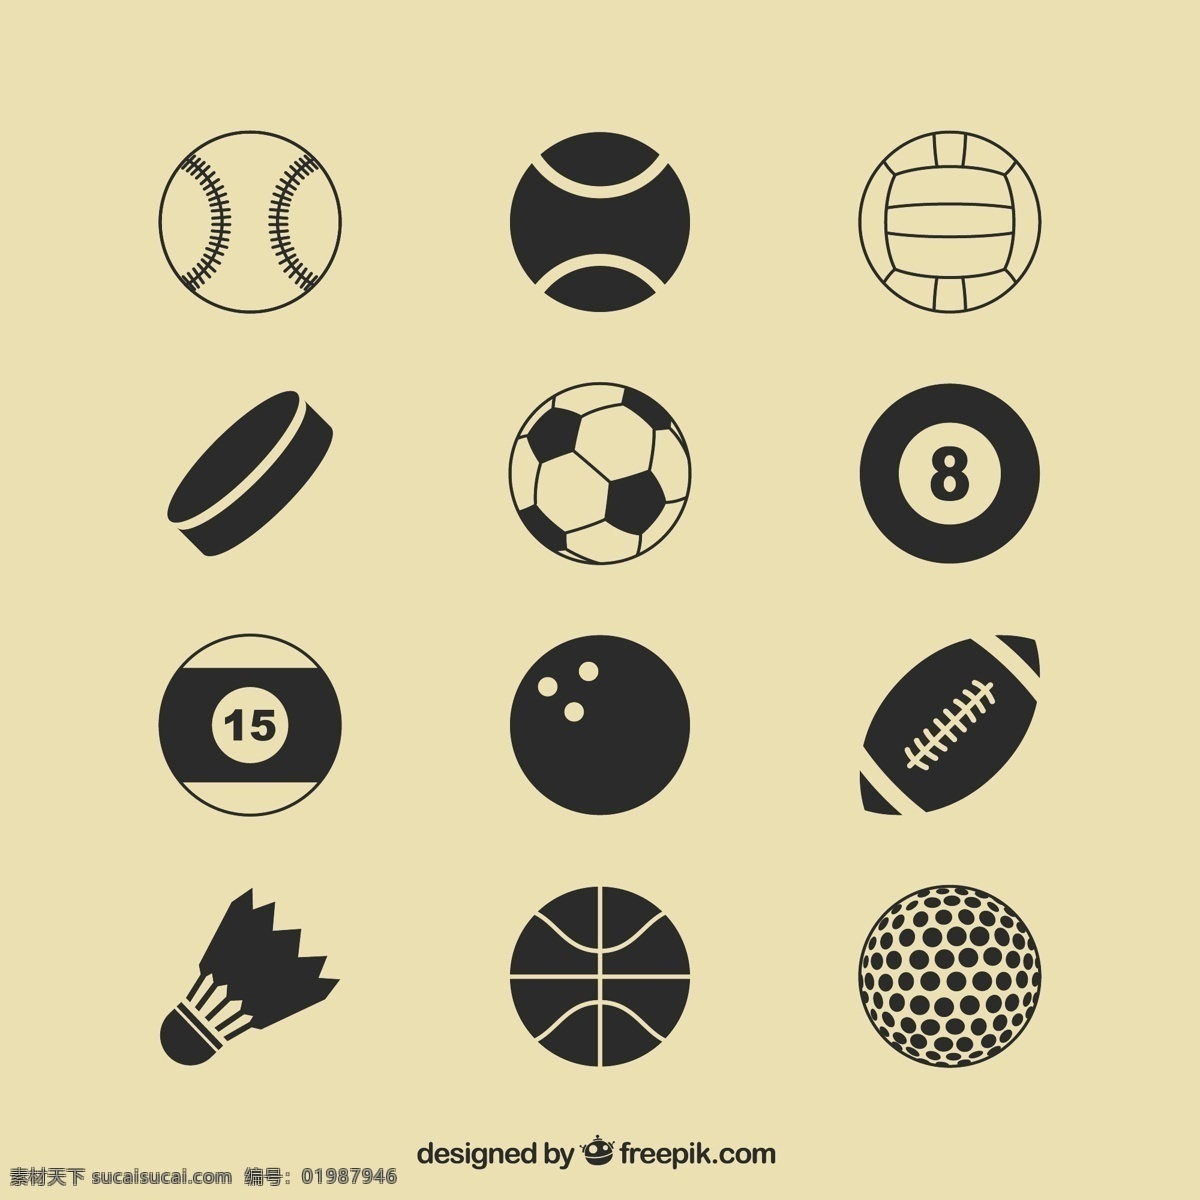 体育图标 图示 足球 体育 偶像 篮球 高尔夫球 棒球 球 排球 游泳池 羽毛球 运动 吹 黄色